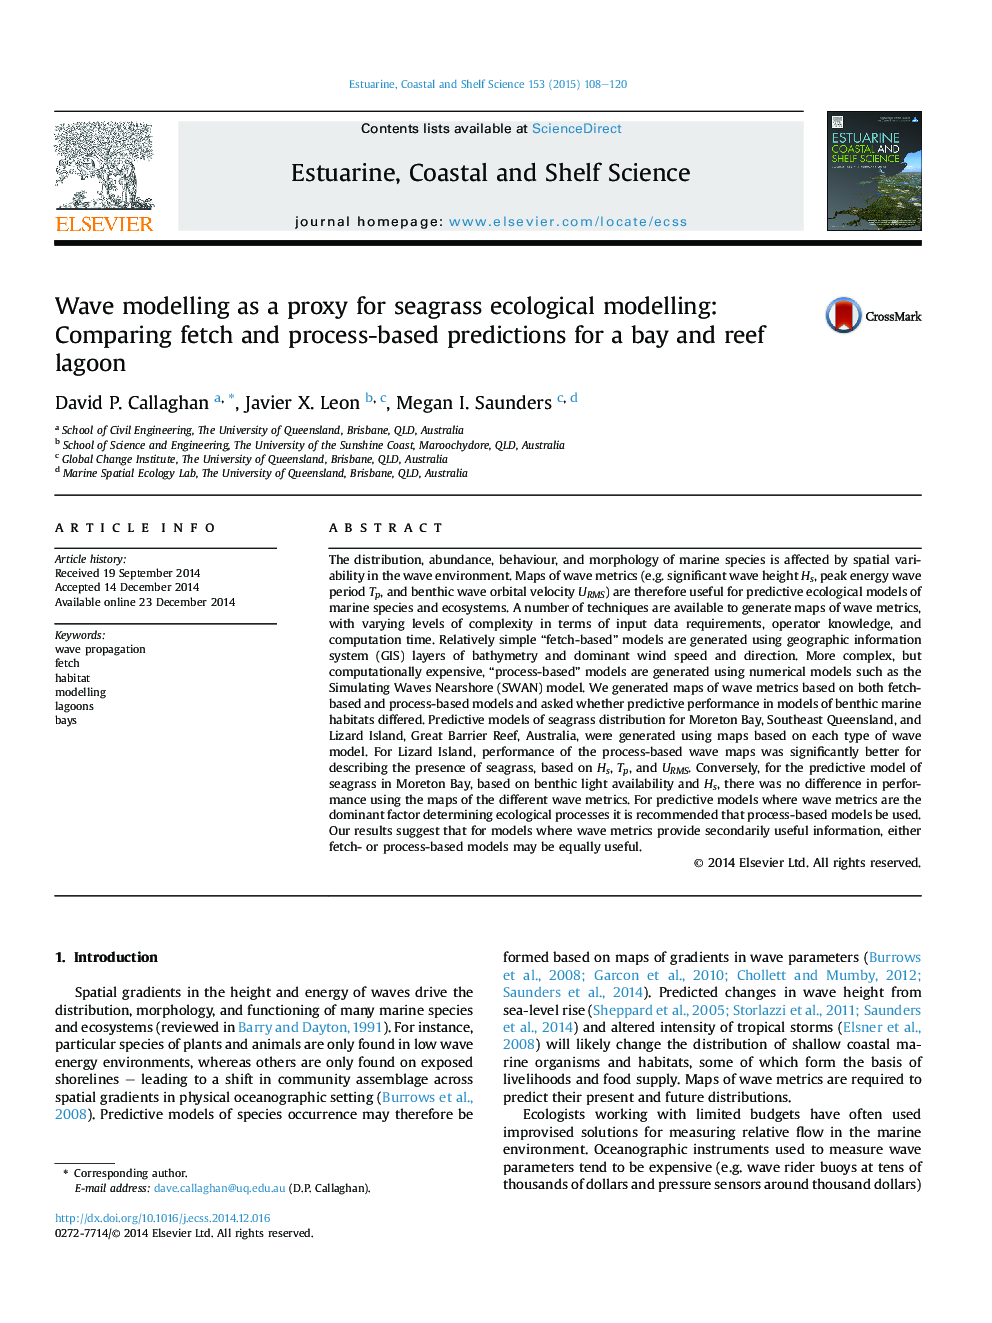 مدل سازی موج به عنوان یک پروکسی برای مدل سازی اکولوژیکی دریایی: مقایسه پیش بینی های برآورد شده و فرآیند برای یک تالاب خلیج و صخره ای 